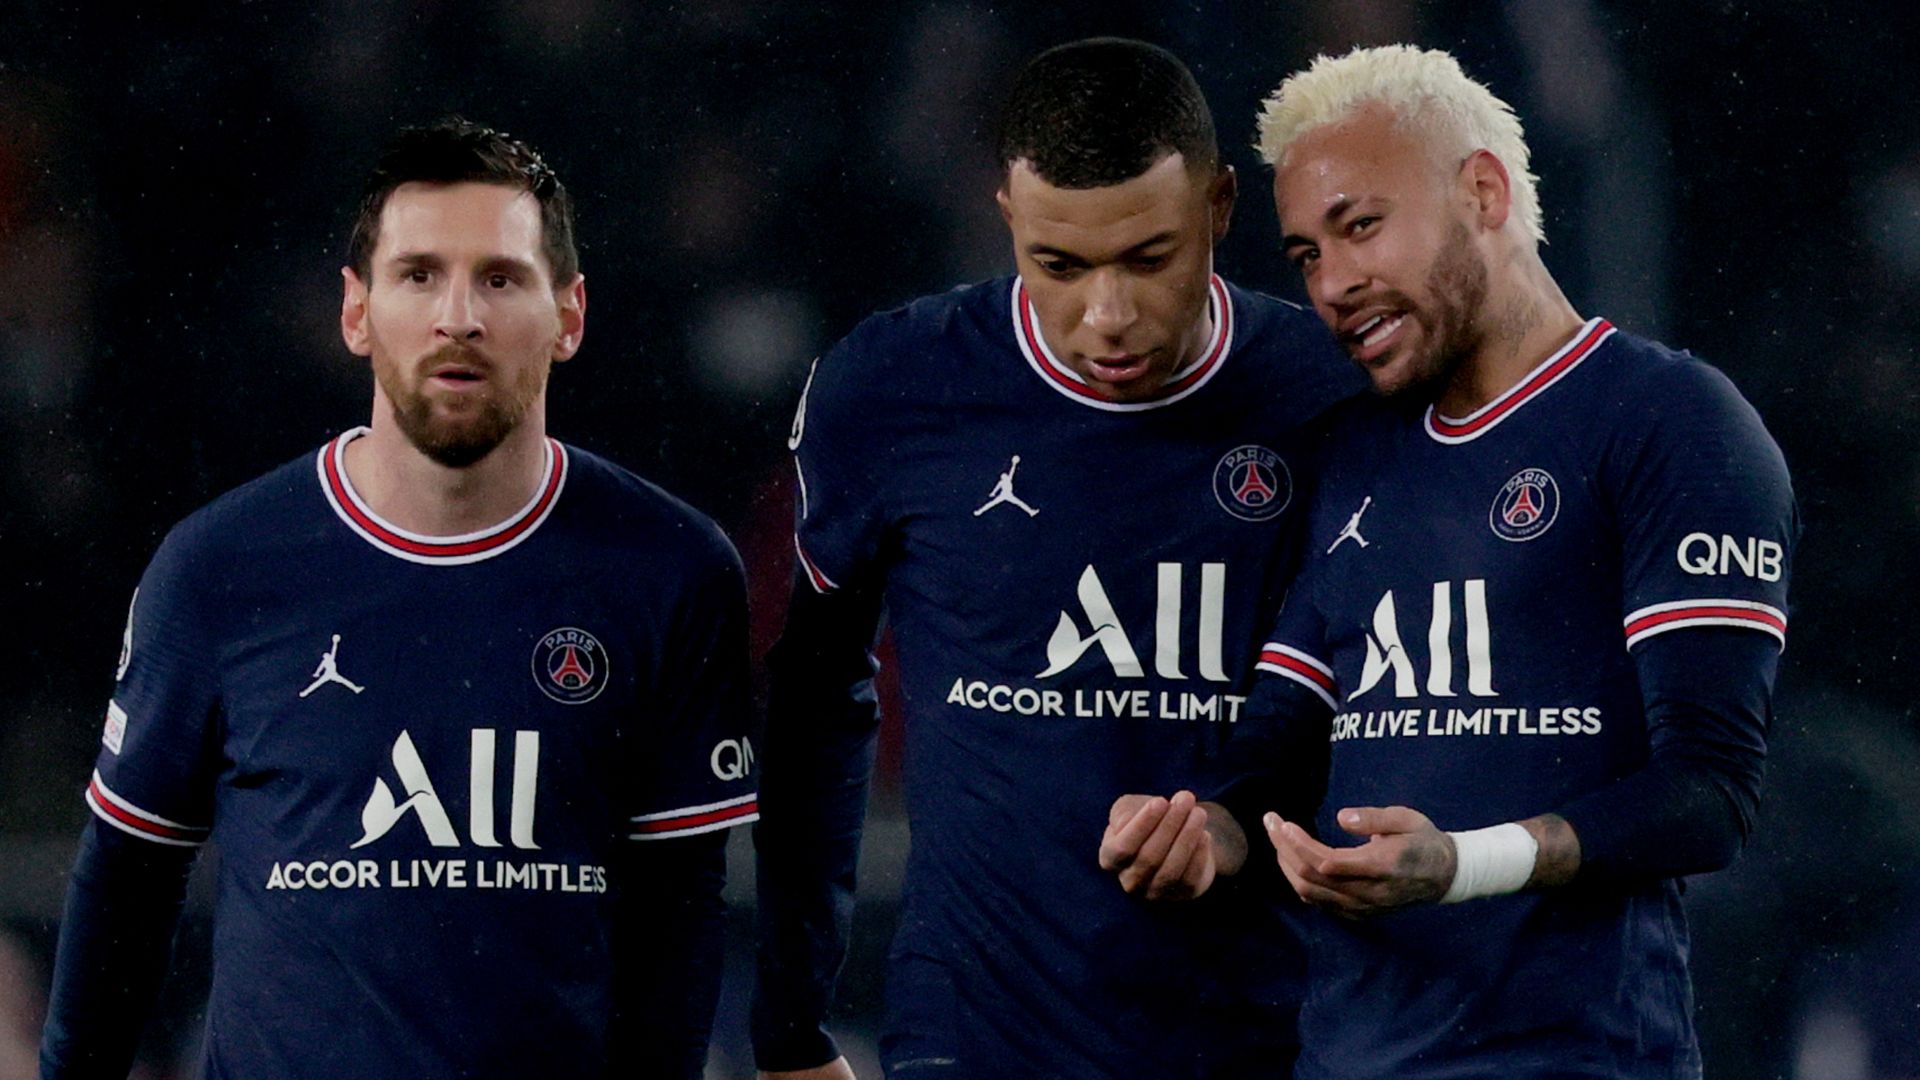 Ligue 1: Phong độ chói sáng của các cầu thủ hàng đầu tại giải đấu Ligue 1 sẽ khiến bạn thăng hoa với bức ảnh đẹp như tranh vẽ này. Hãy bấm vào để thưởng thức cảm giác tuyệt vời khi nhìn thấy những siêu sao bóng đá hóa thân trên sân cỏ.